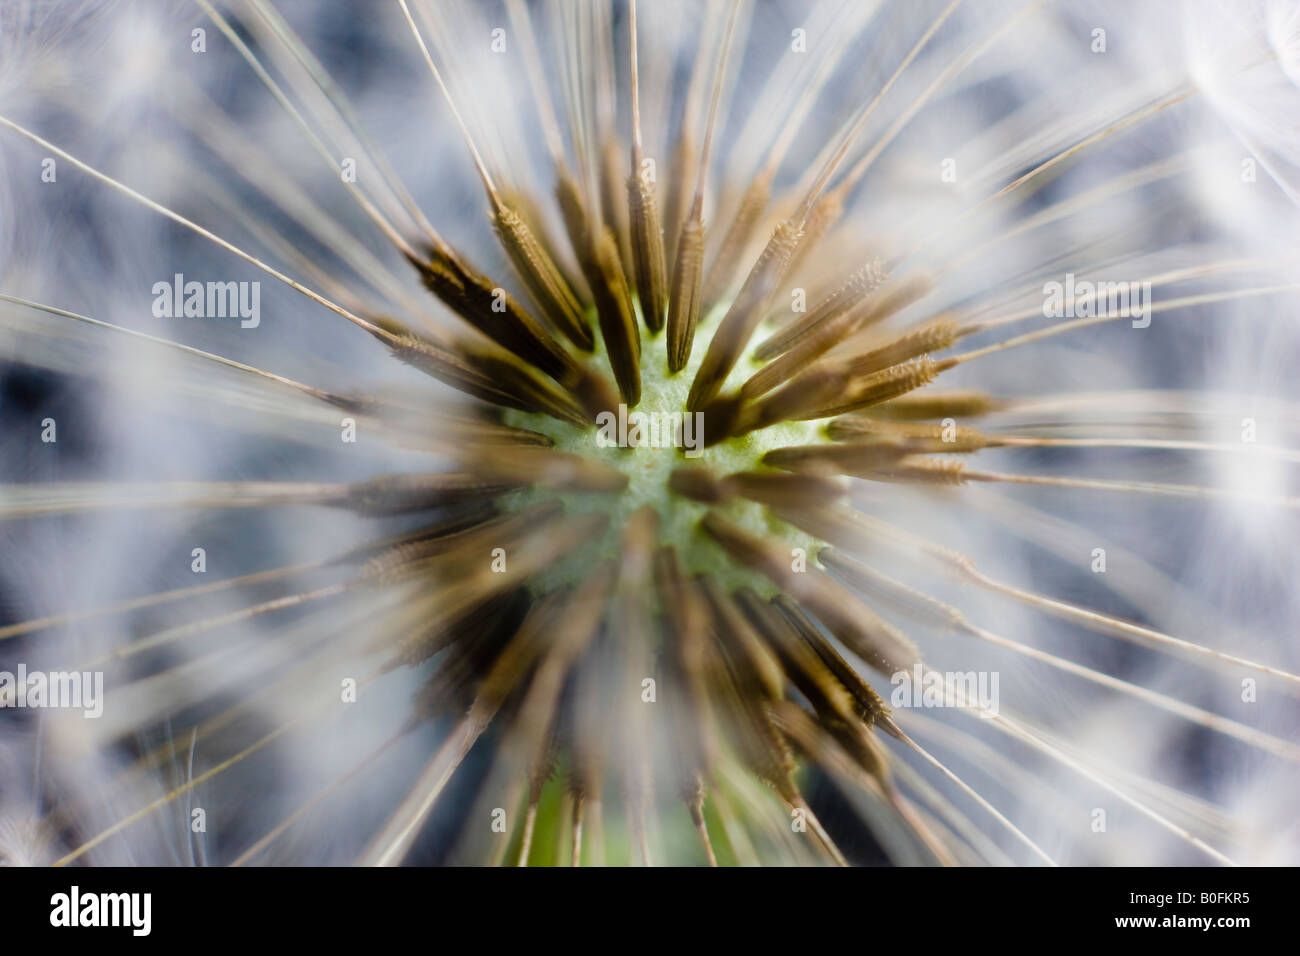 Graines de fleurs de pissenlit Taraxacum officinale Asteraceae macro close up Banque D'Images